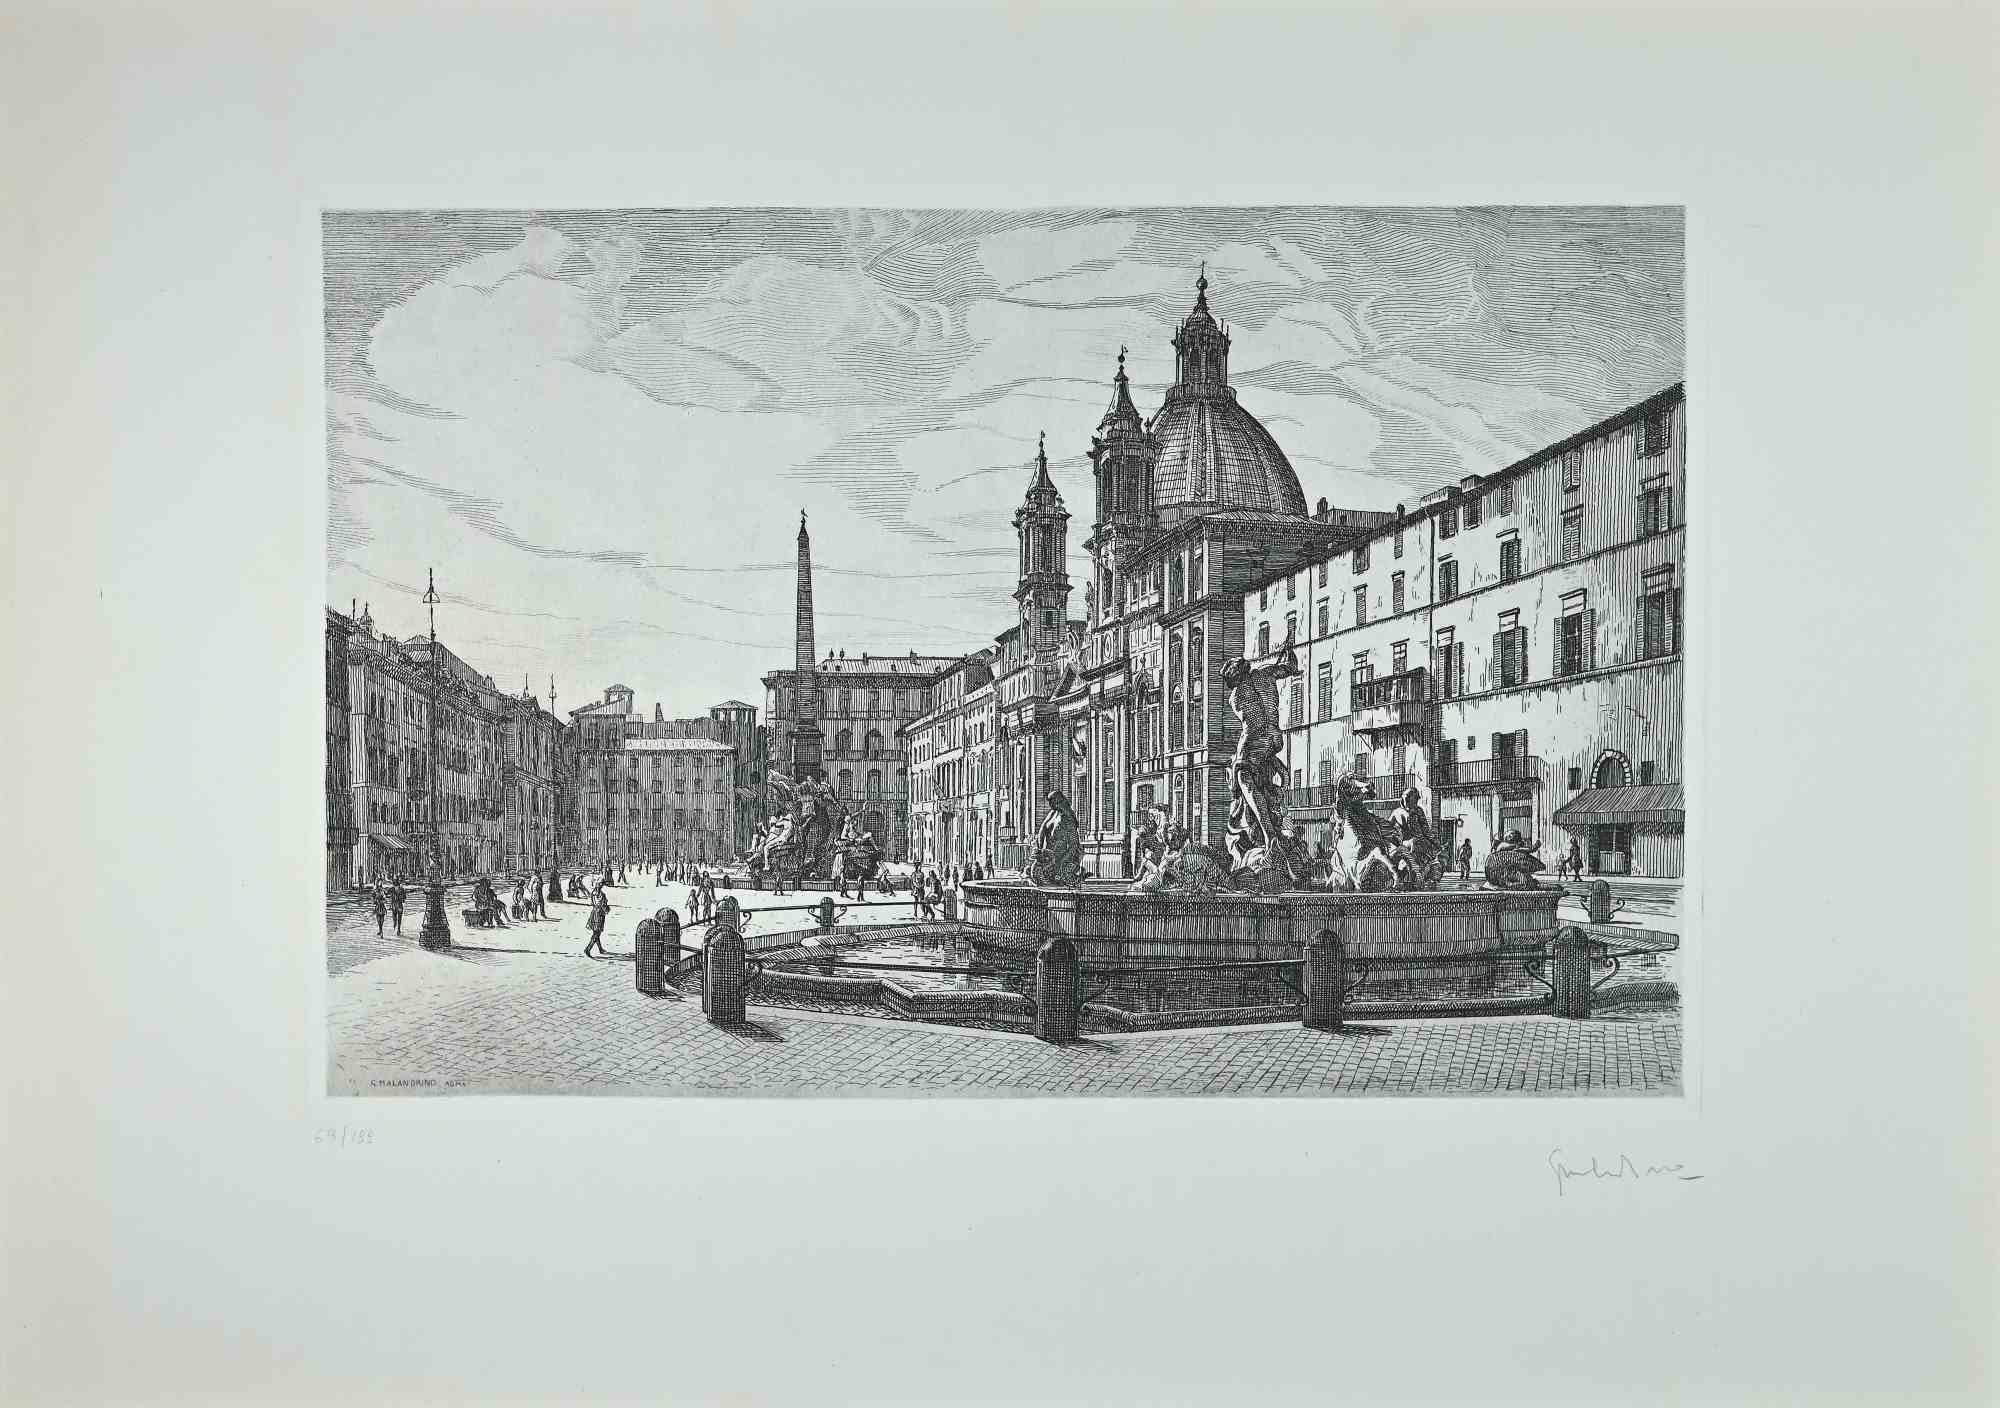 Vue de la Piazza Navona  est une œuvre d'art contemporaine originale réalisée en 1970 par l'artiste italien  Giuseppe Malandrino  (Modica, 1910 - Rome, 1979).
 
Gravure sur carton.
 
Signé à la main au crayon dans le coin inférieur droit.  Numéroté